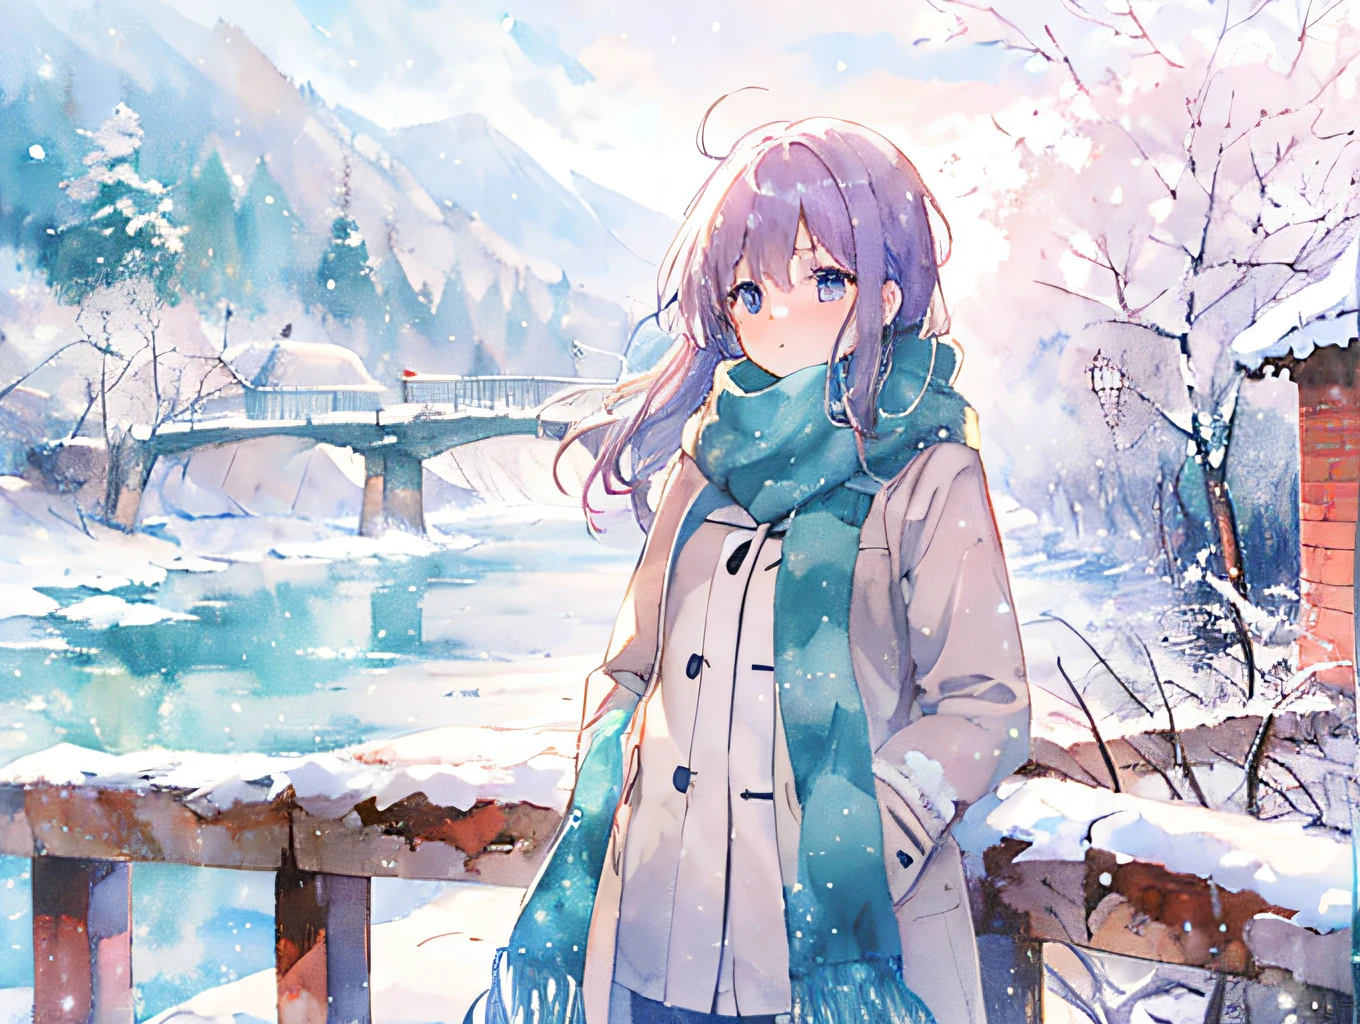 девушка в стиле аниме, мост, снежный пейзаж, теплое пальто и шарф, видимое дыхание, мягкий, акварельный стиль аниме, белые и синие, Снежный день,